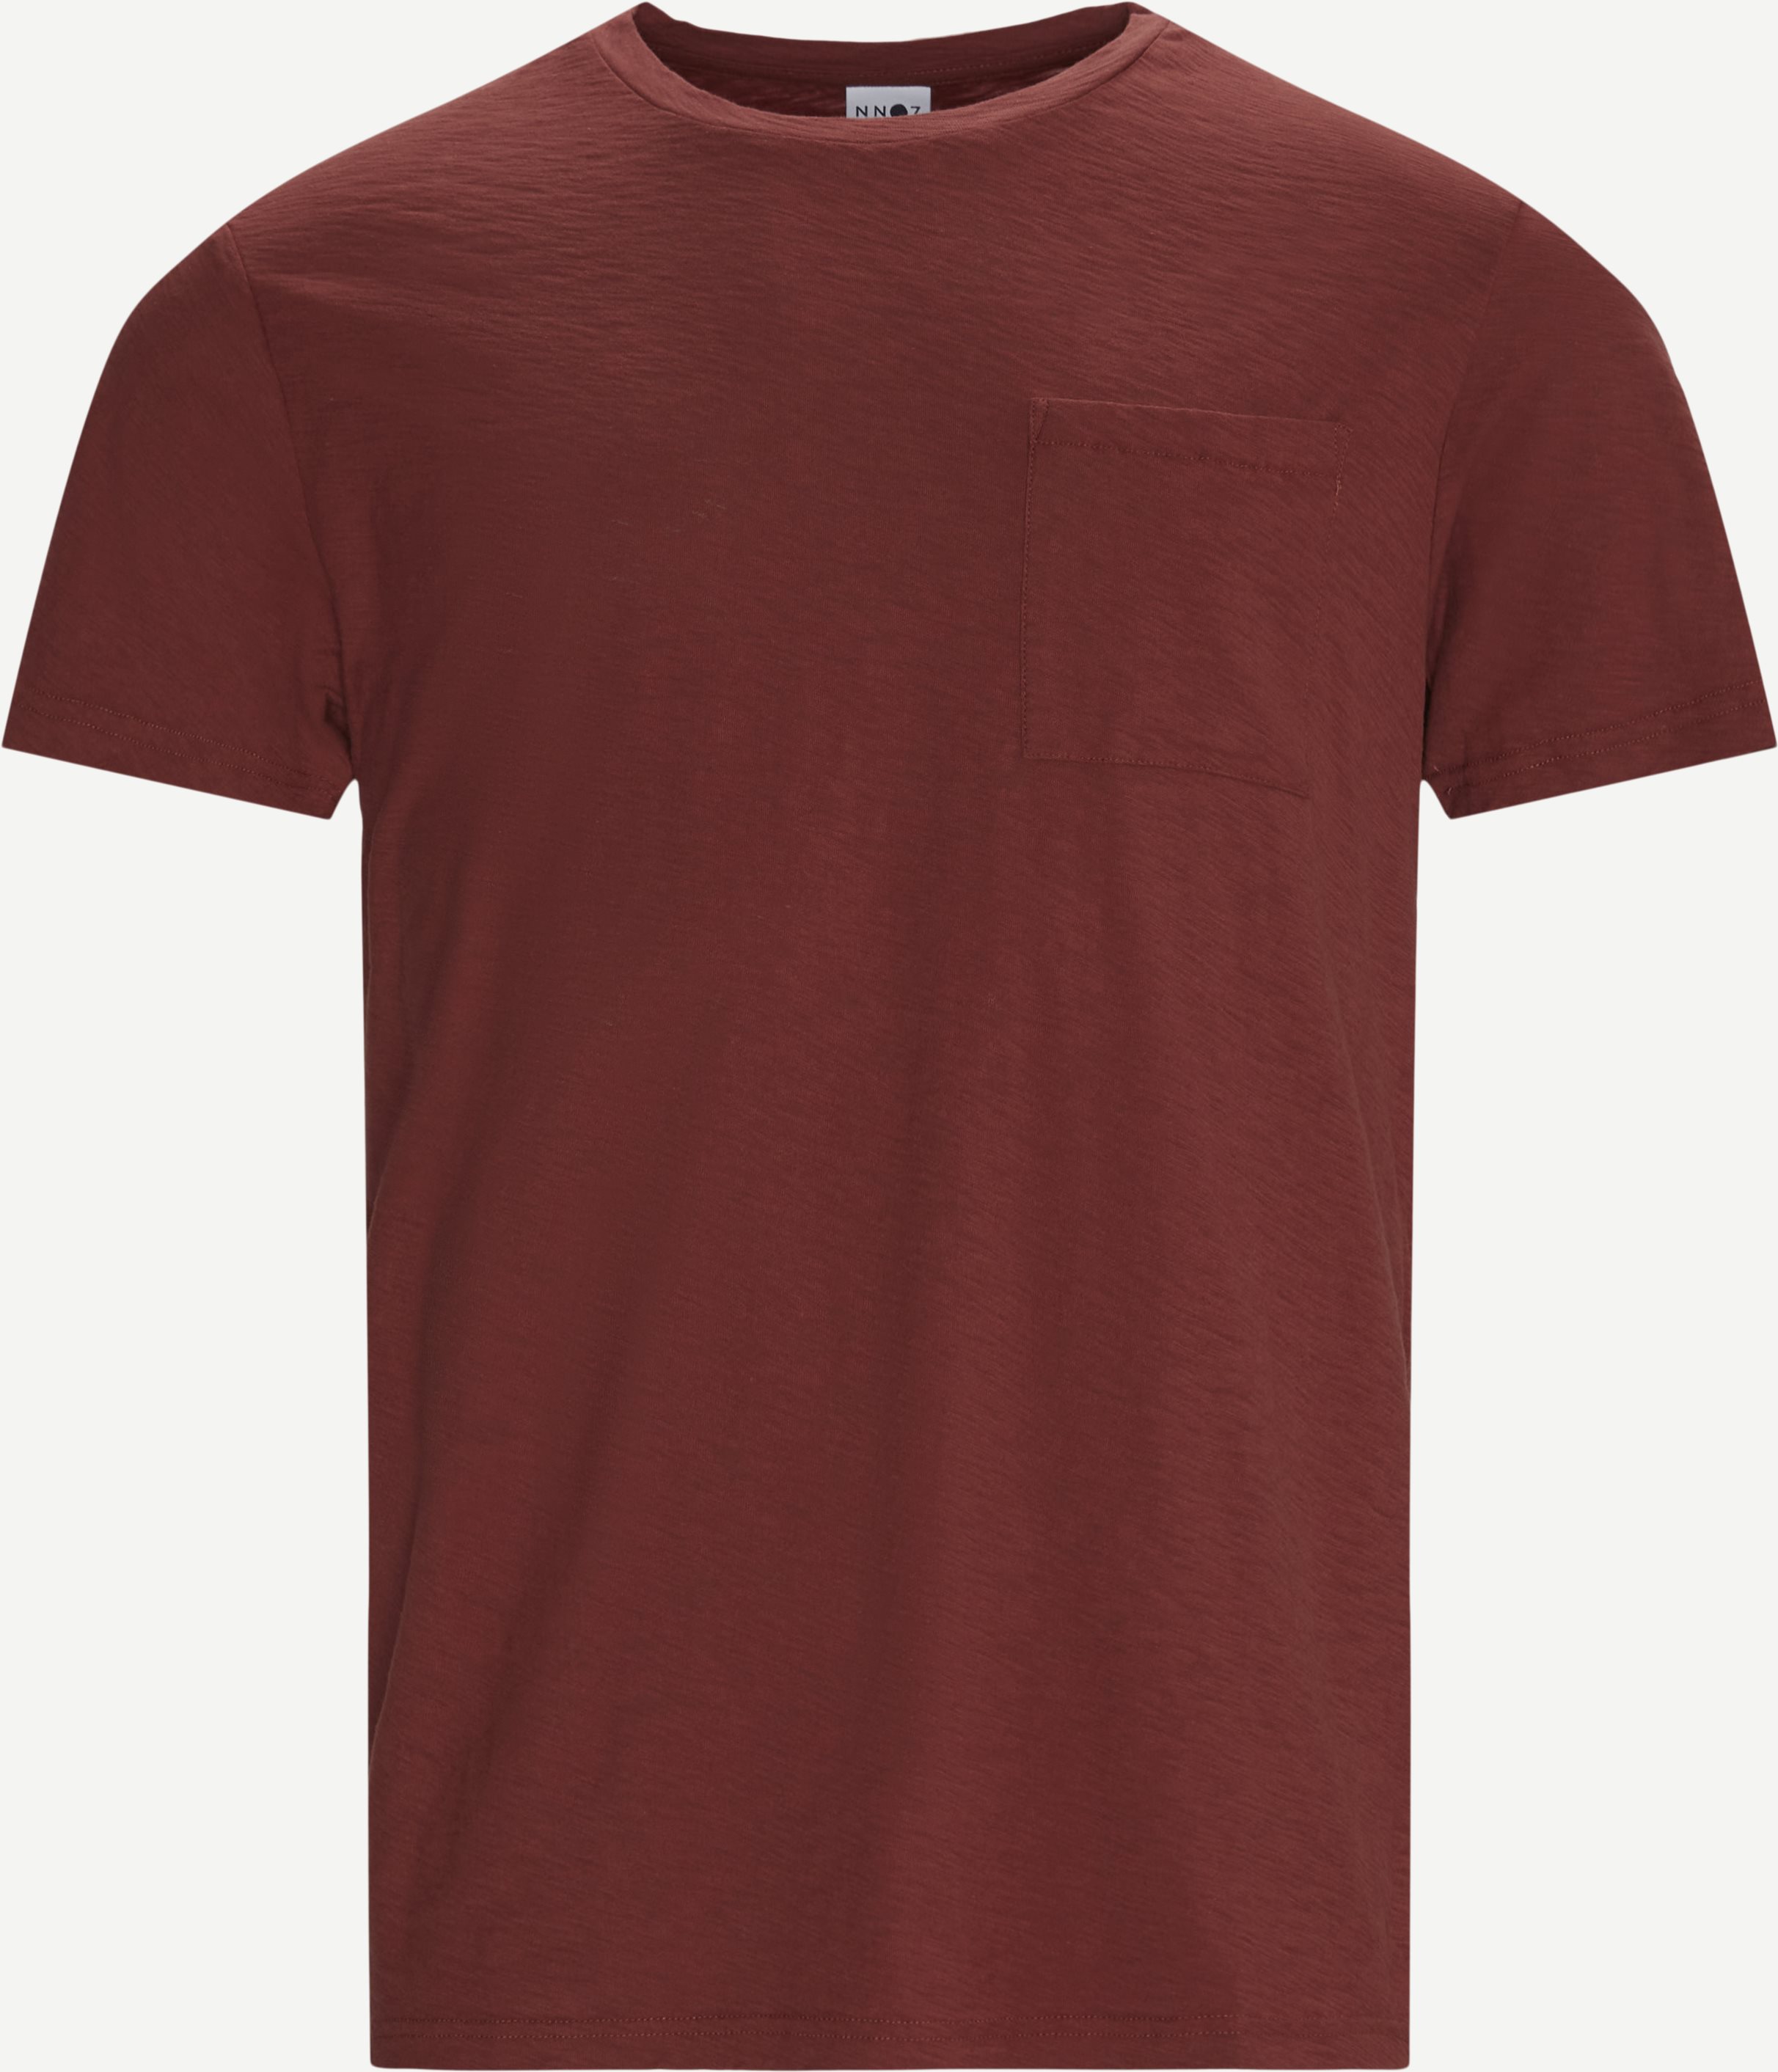 Aspen Tee - T-shirts - Regular fit - Rød